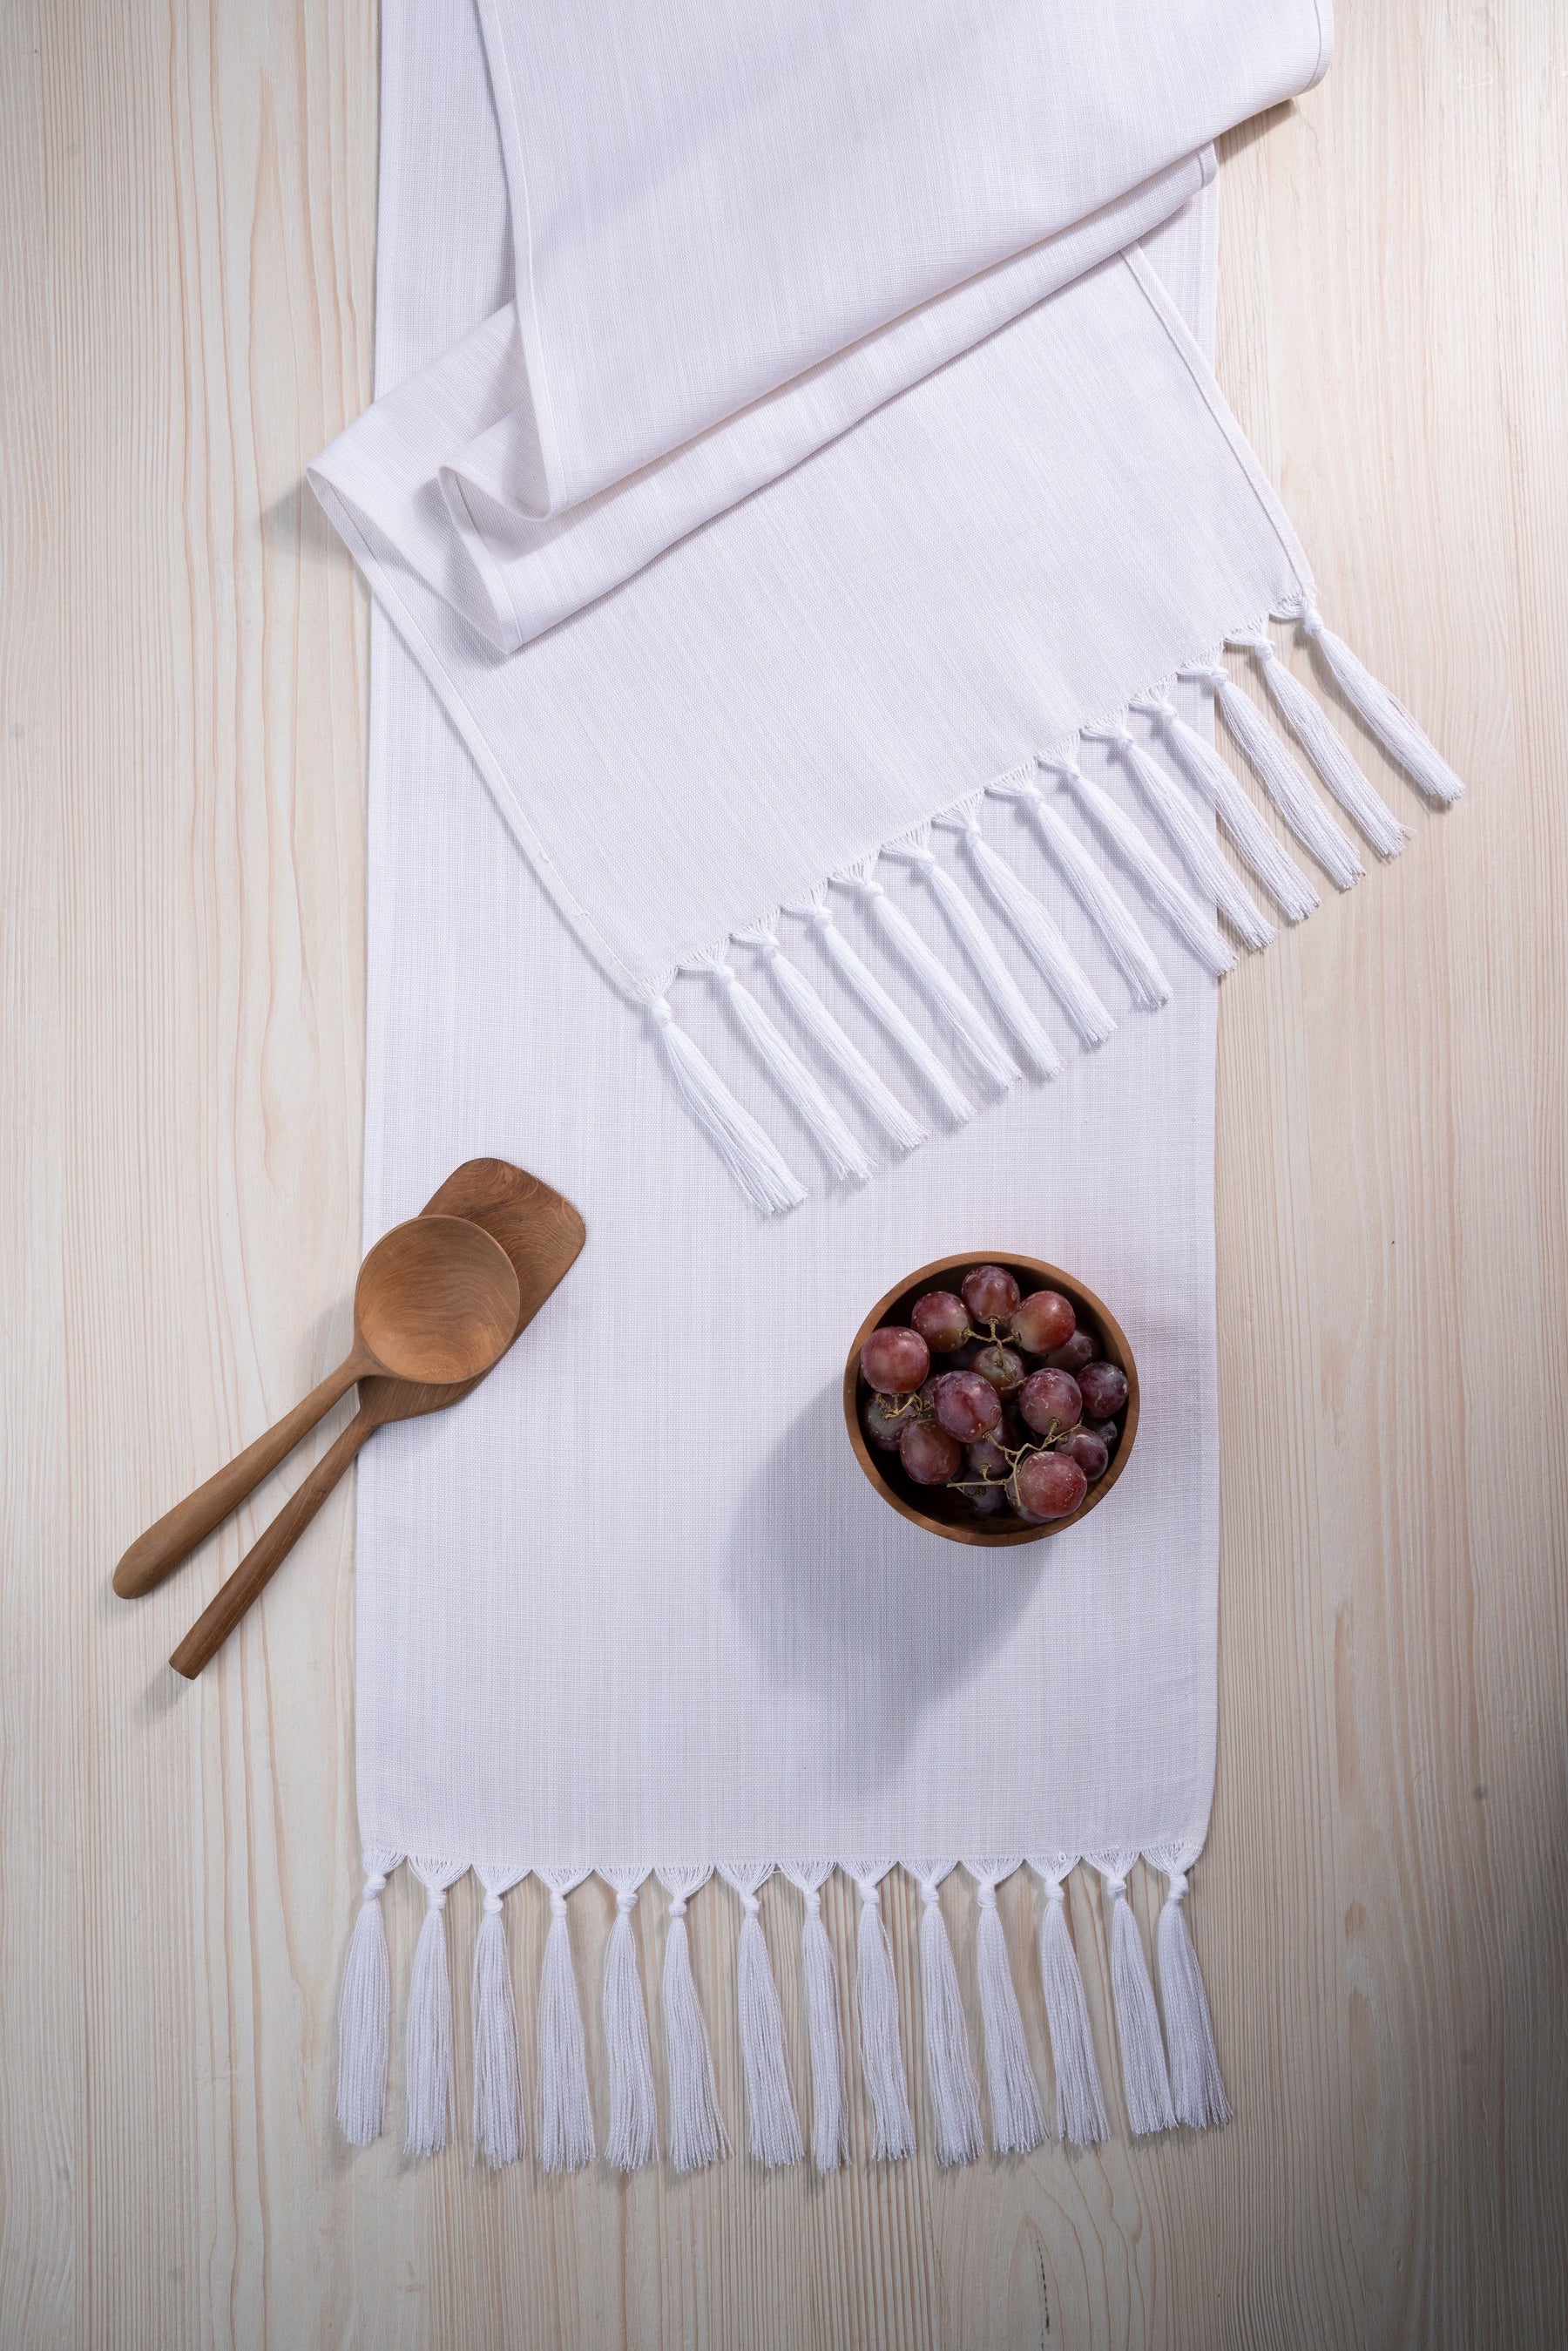 Chambray Cream and White Linen Textured Table Runner - Tassel